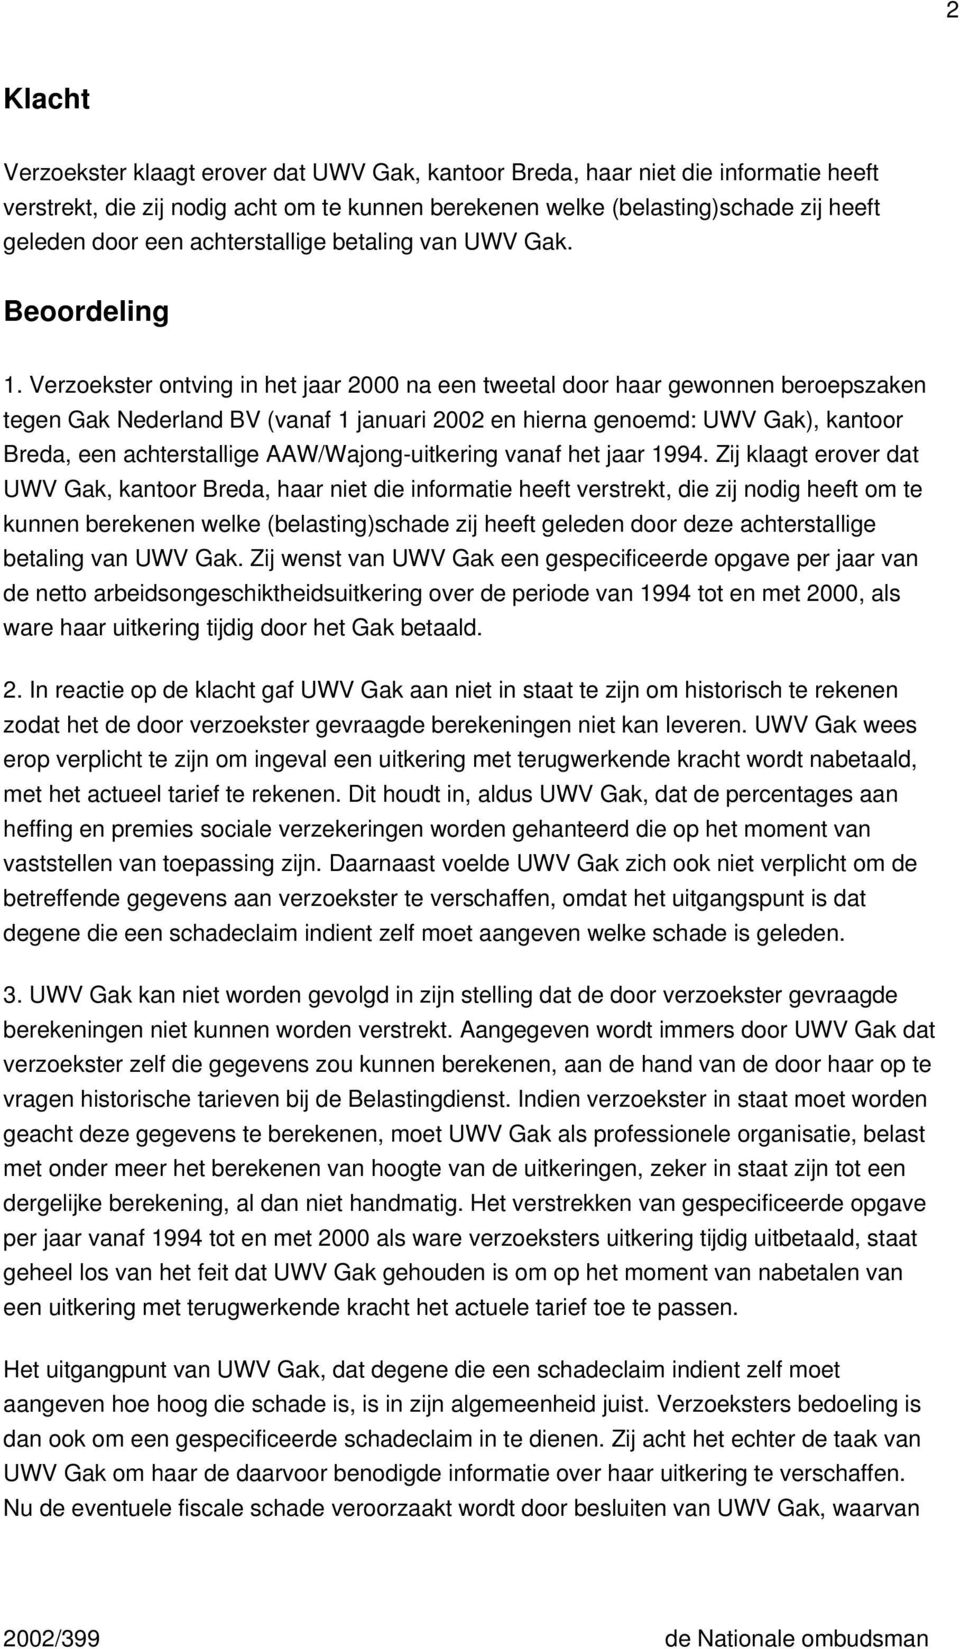 Verzoekster ontving in het jaar 2000 na een tweetal door haar gewonnen beroepszaken tegen Gak Nederland BV (vanaf 1 januari 2002 en hierna genoemd: UWV Gak), kantoor Breda, een achterstallige